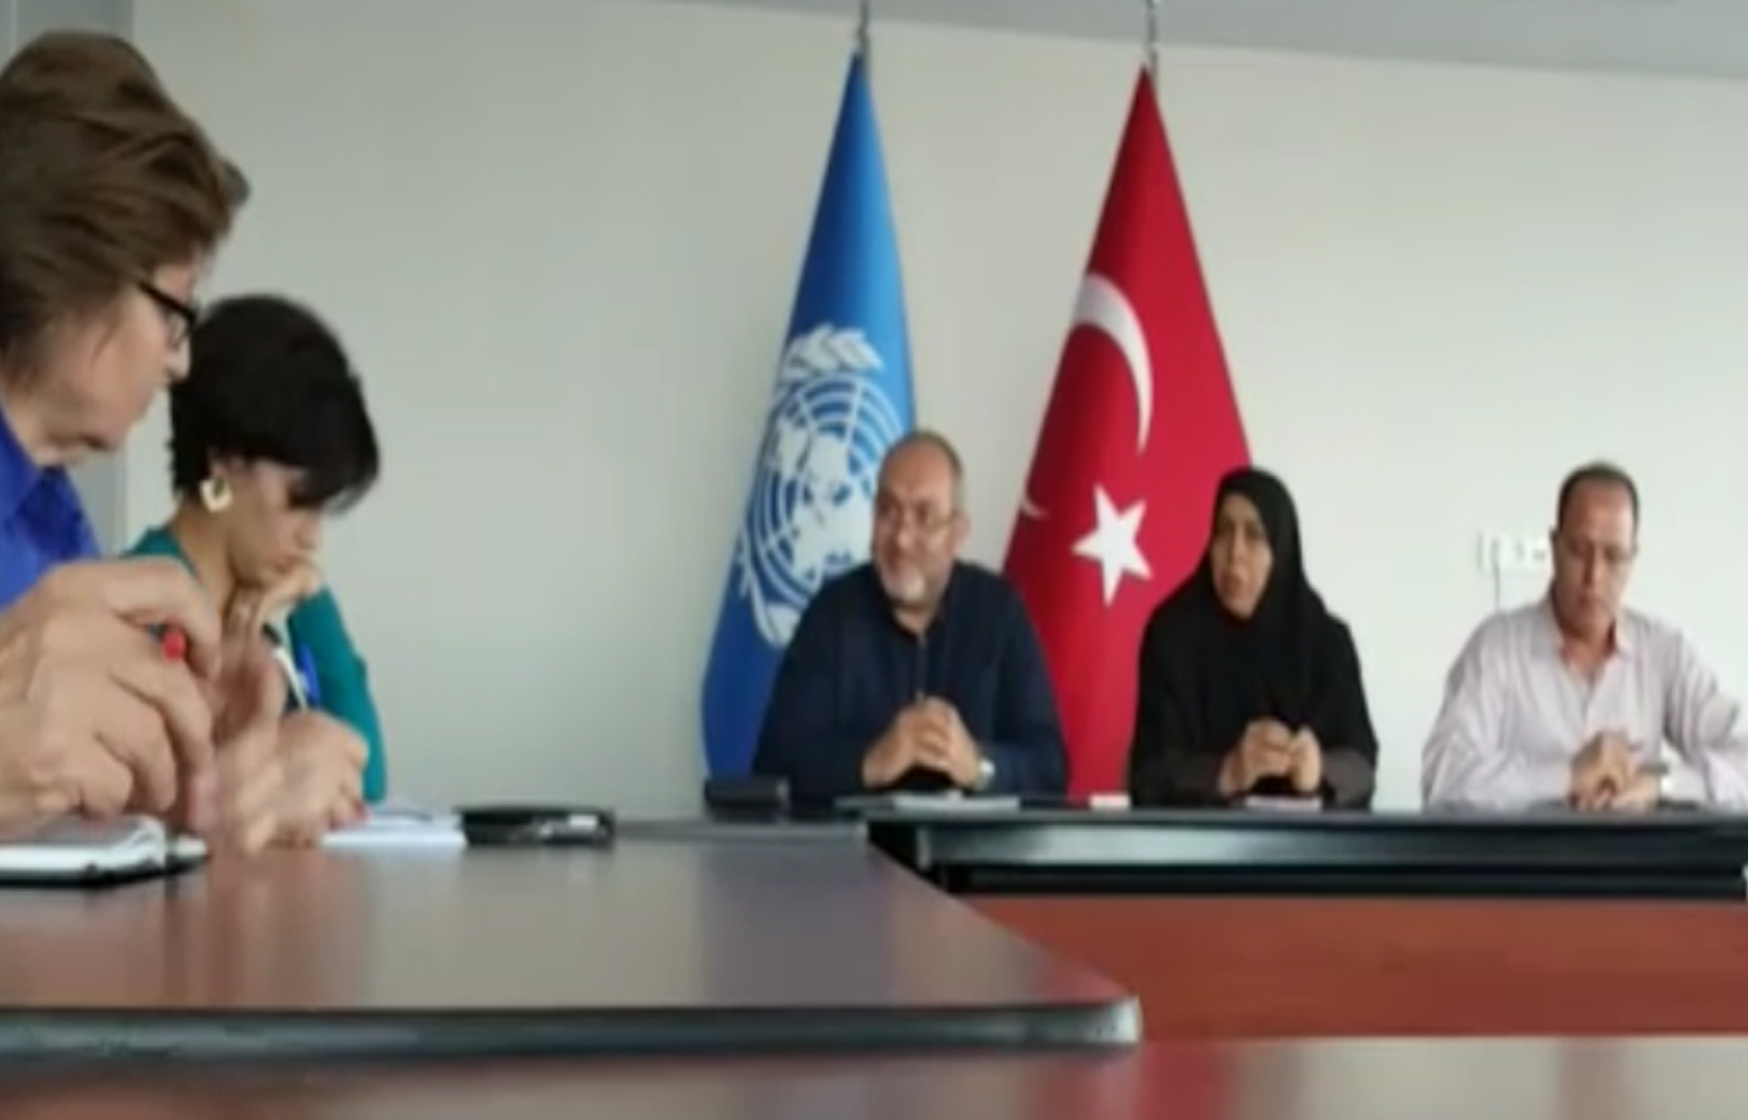 وفد من البرلمان يلتقي بمديرة مقر هيئة الأمم المتحدة بتركيا للضغط من أجل إيقاف التعذيب في مصر